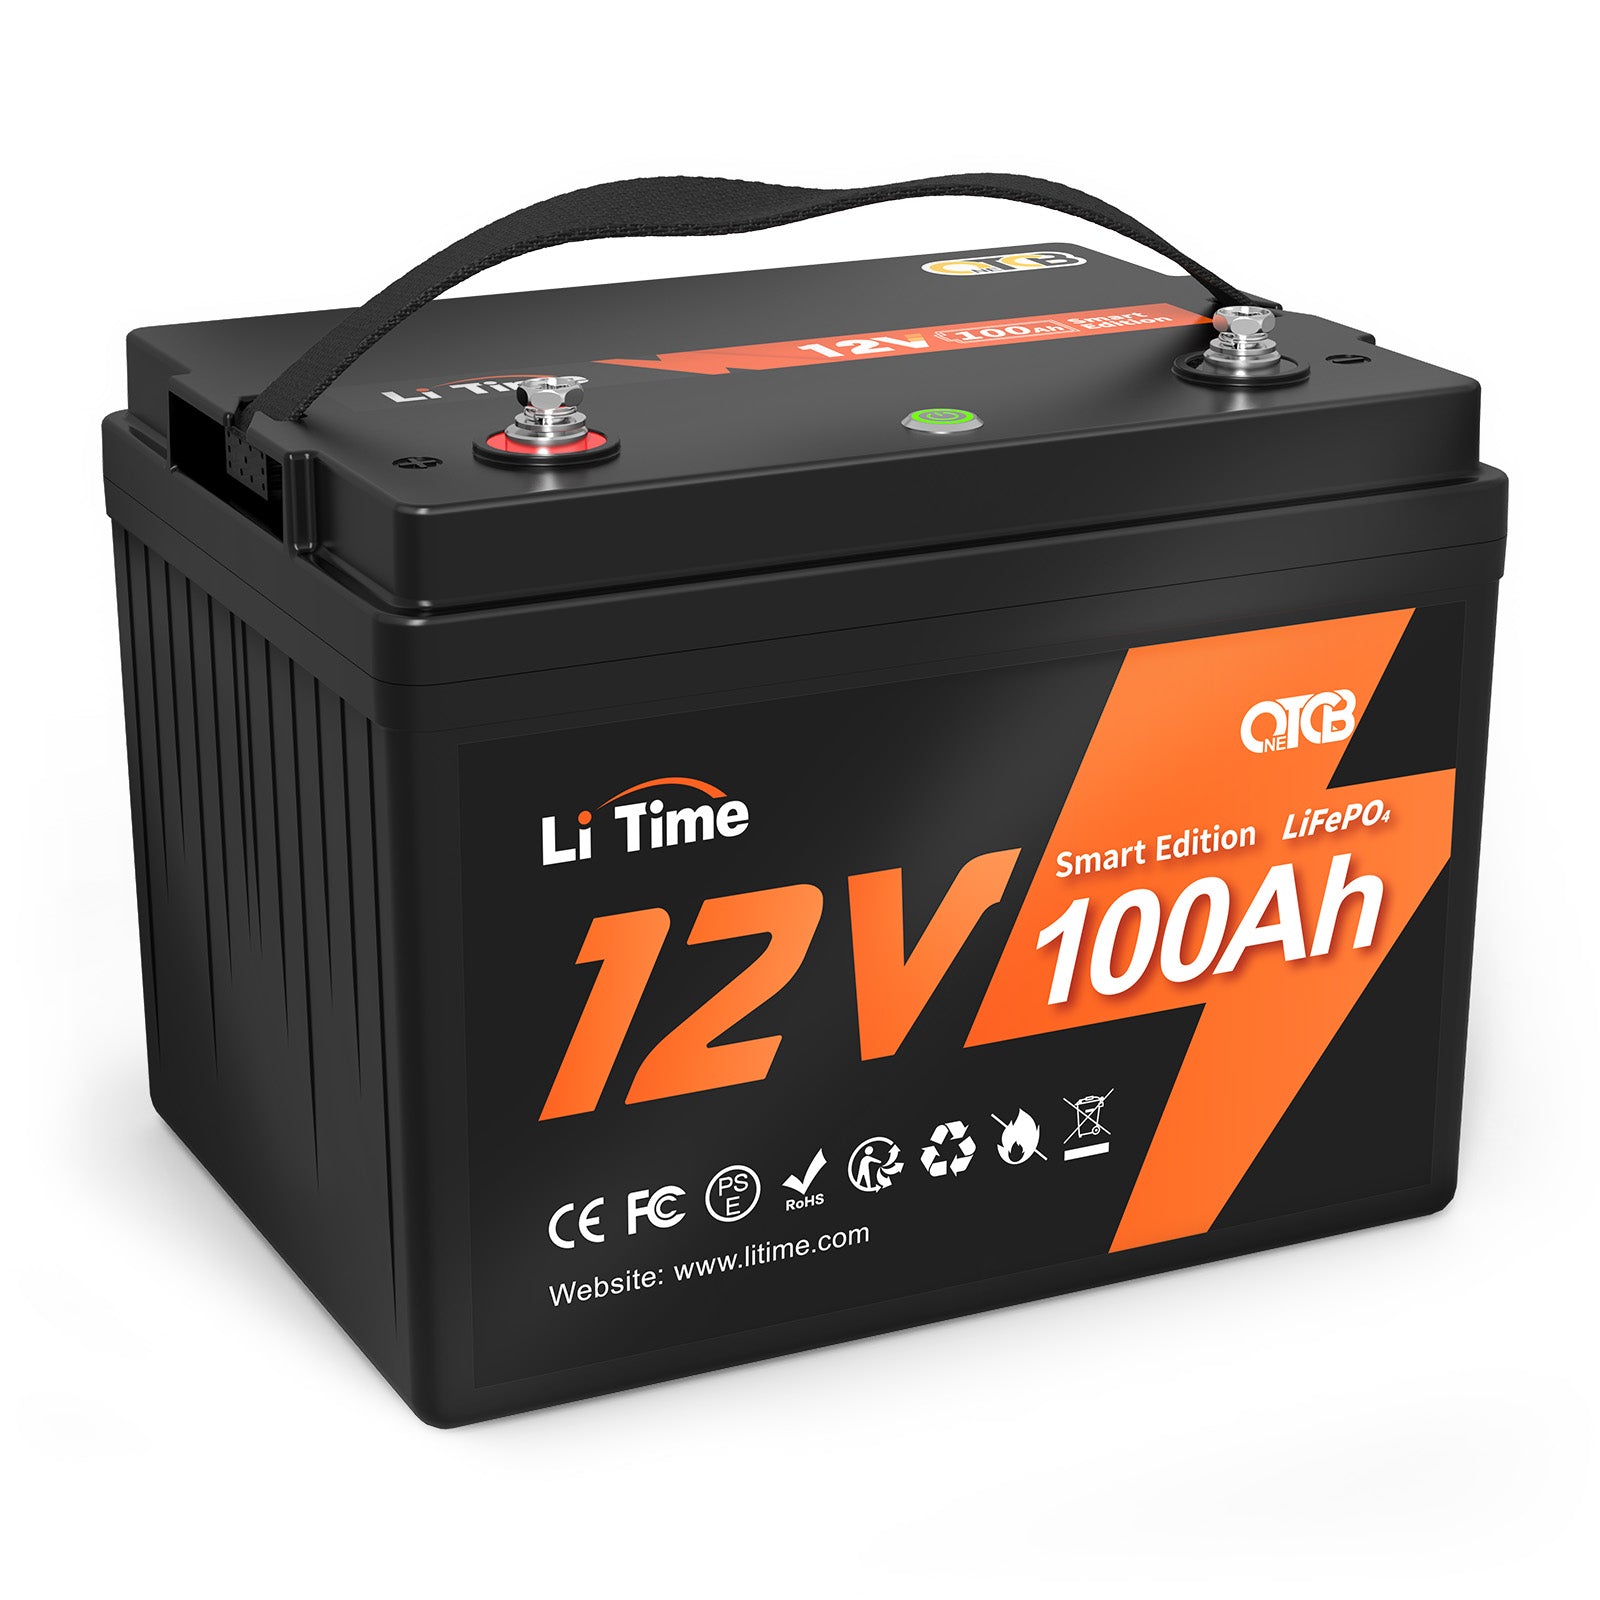 スペシャル】LiTime 12V 100AhスマートOTCBリン酸鉄リチウムバッテリー 